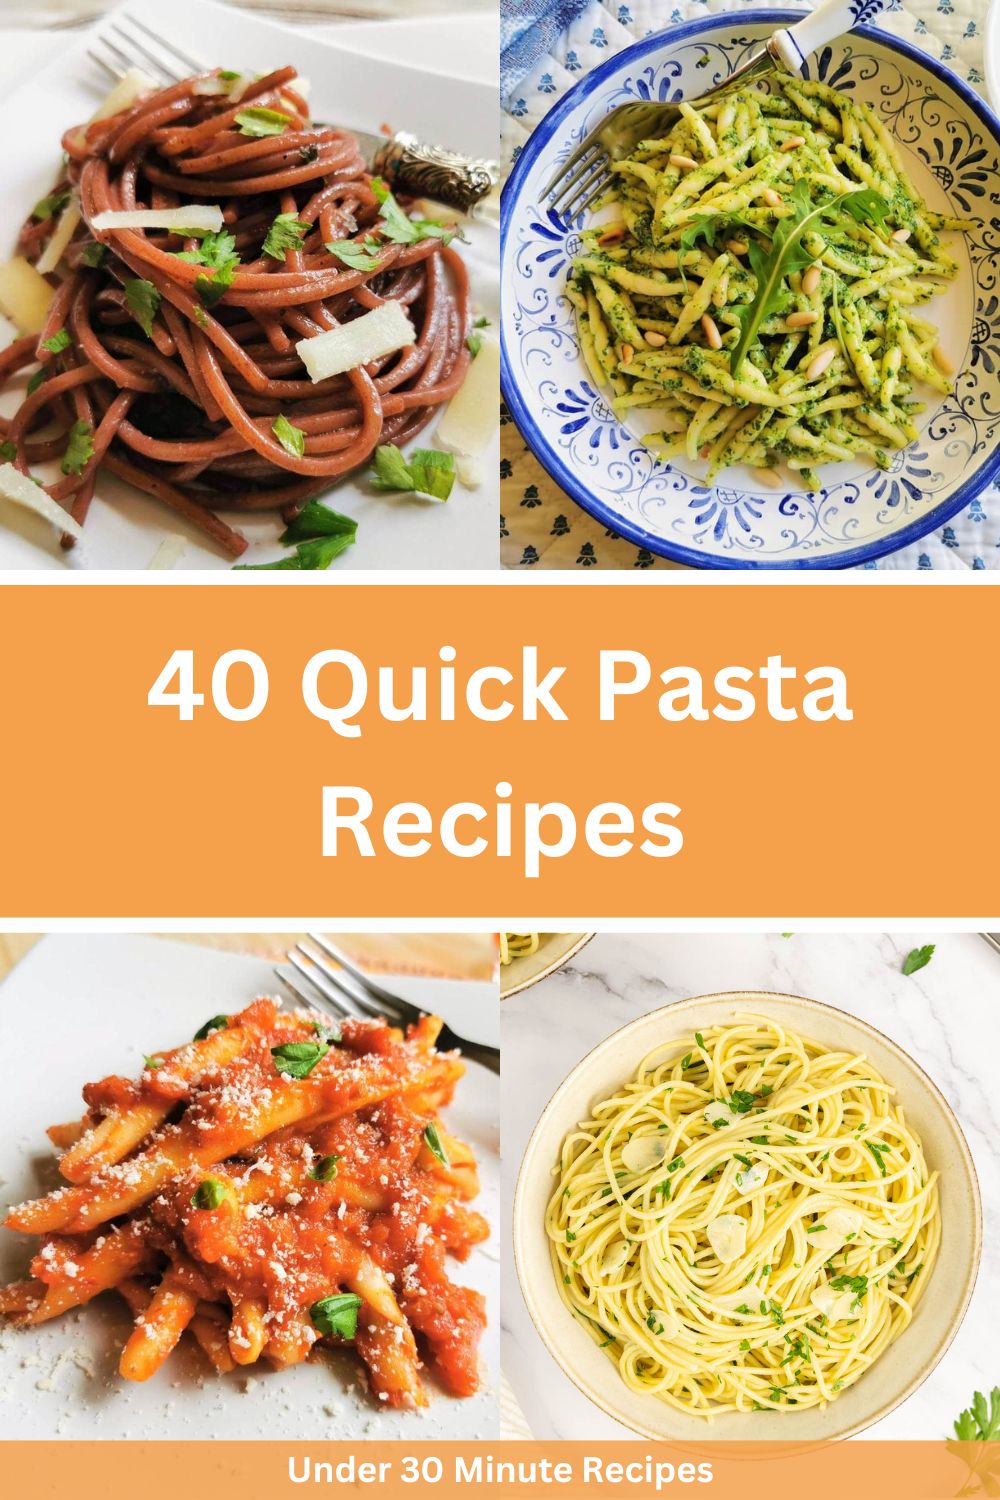 Quick pasta recipes.